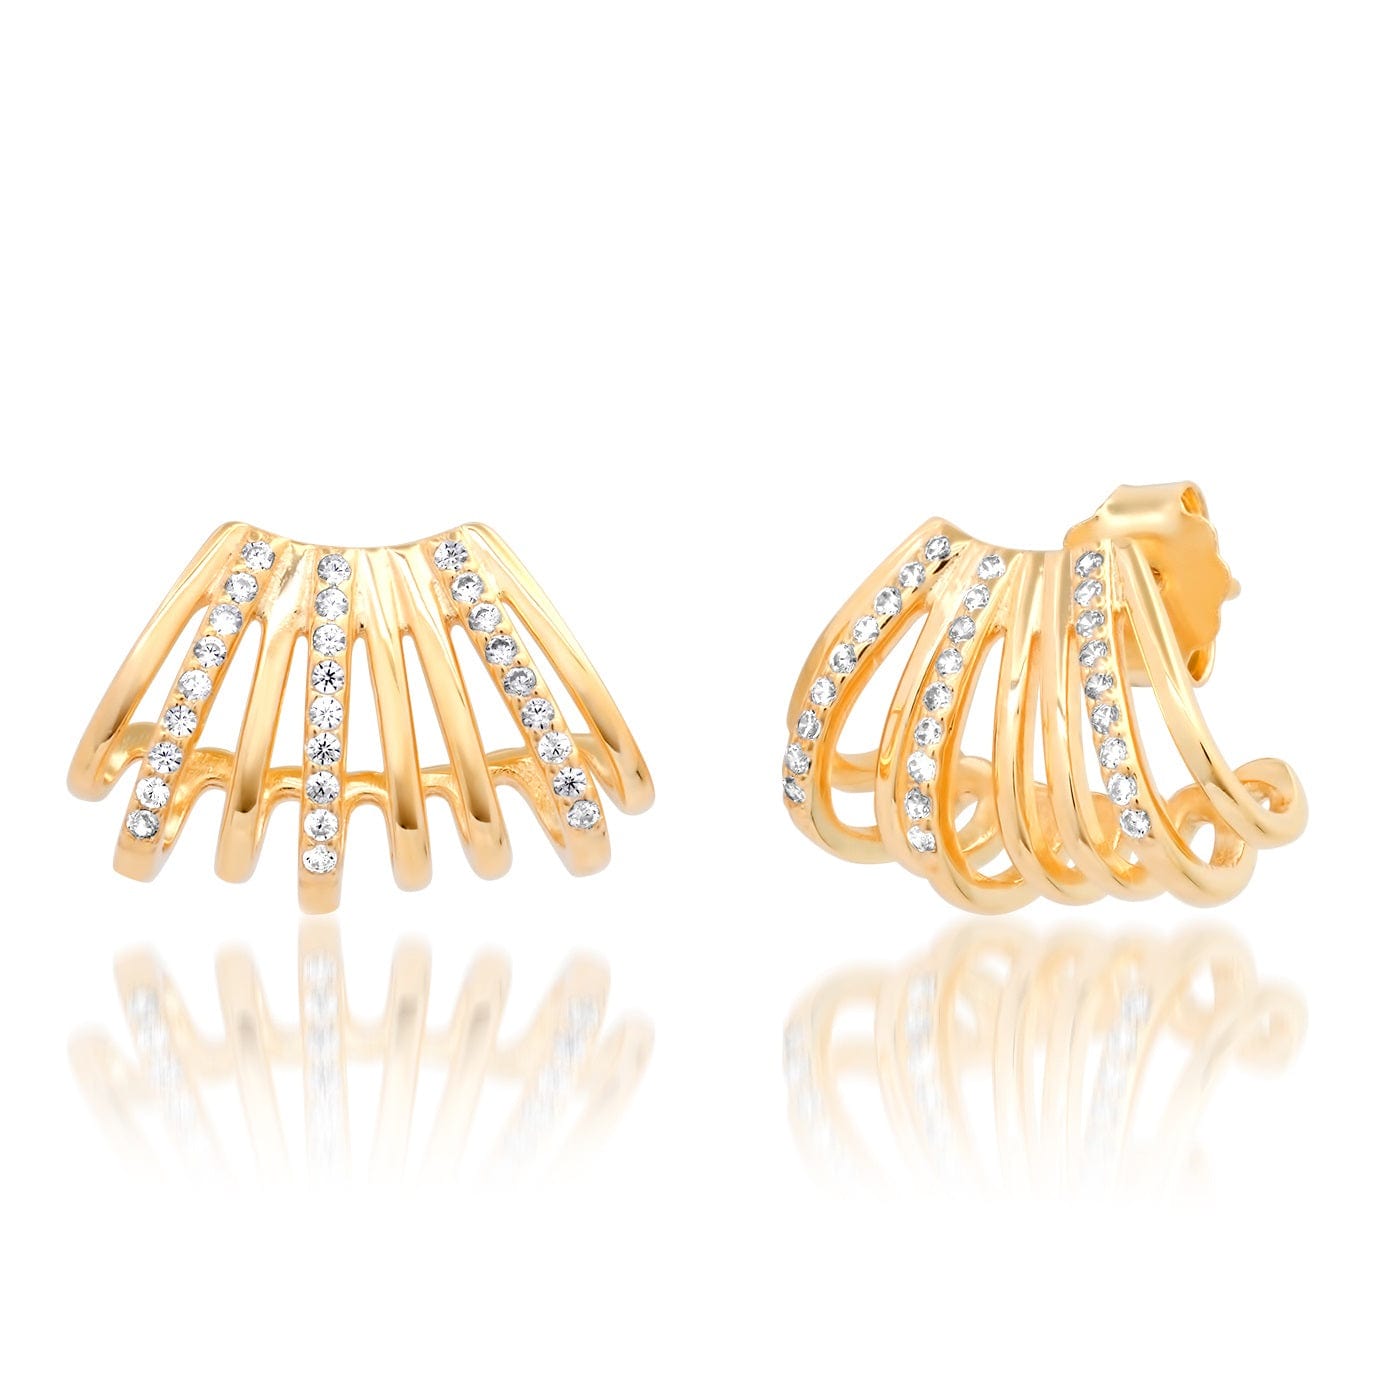 TAI JEWELRY Earrings Gold Multi-Row Huggie